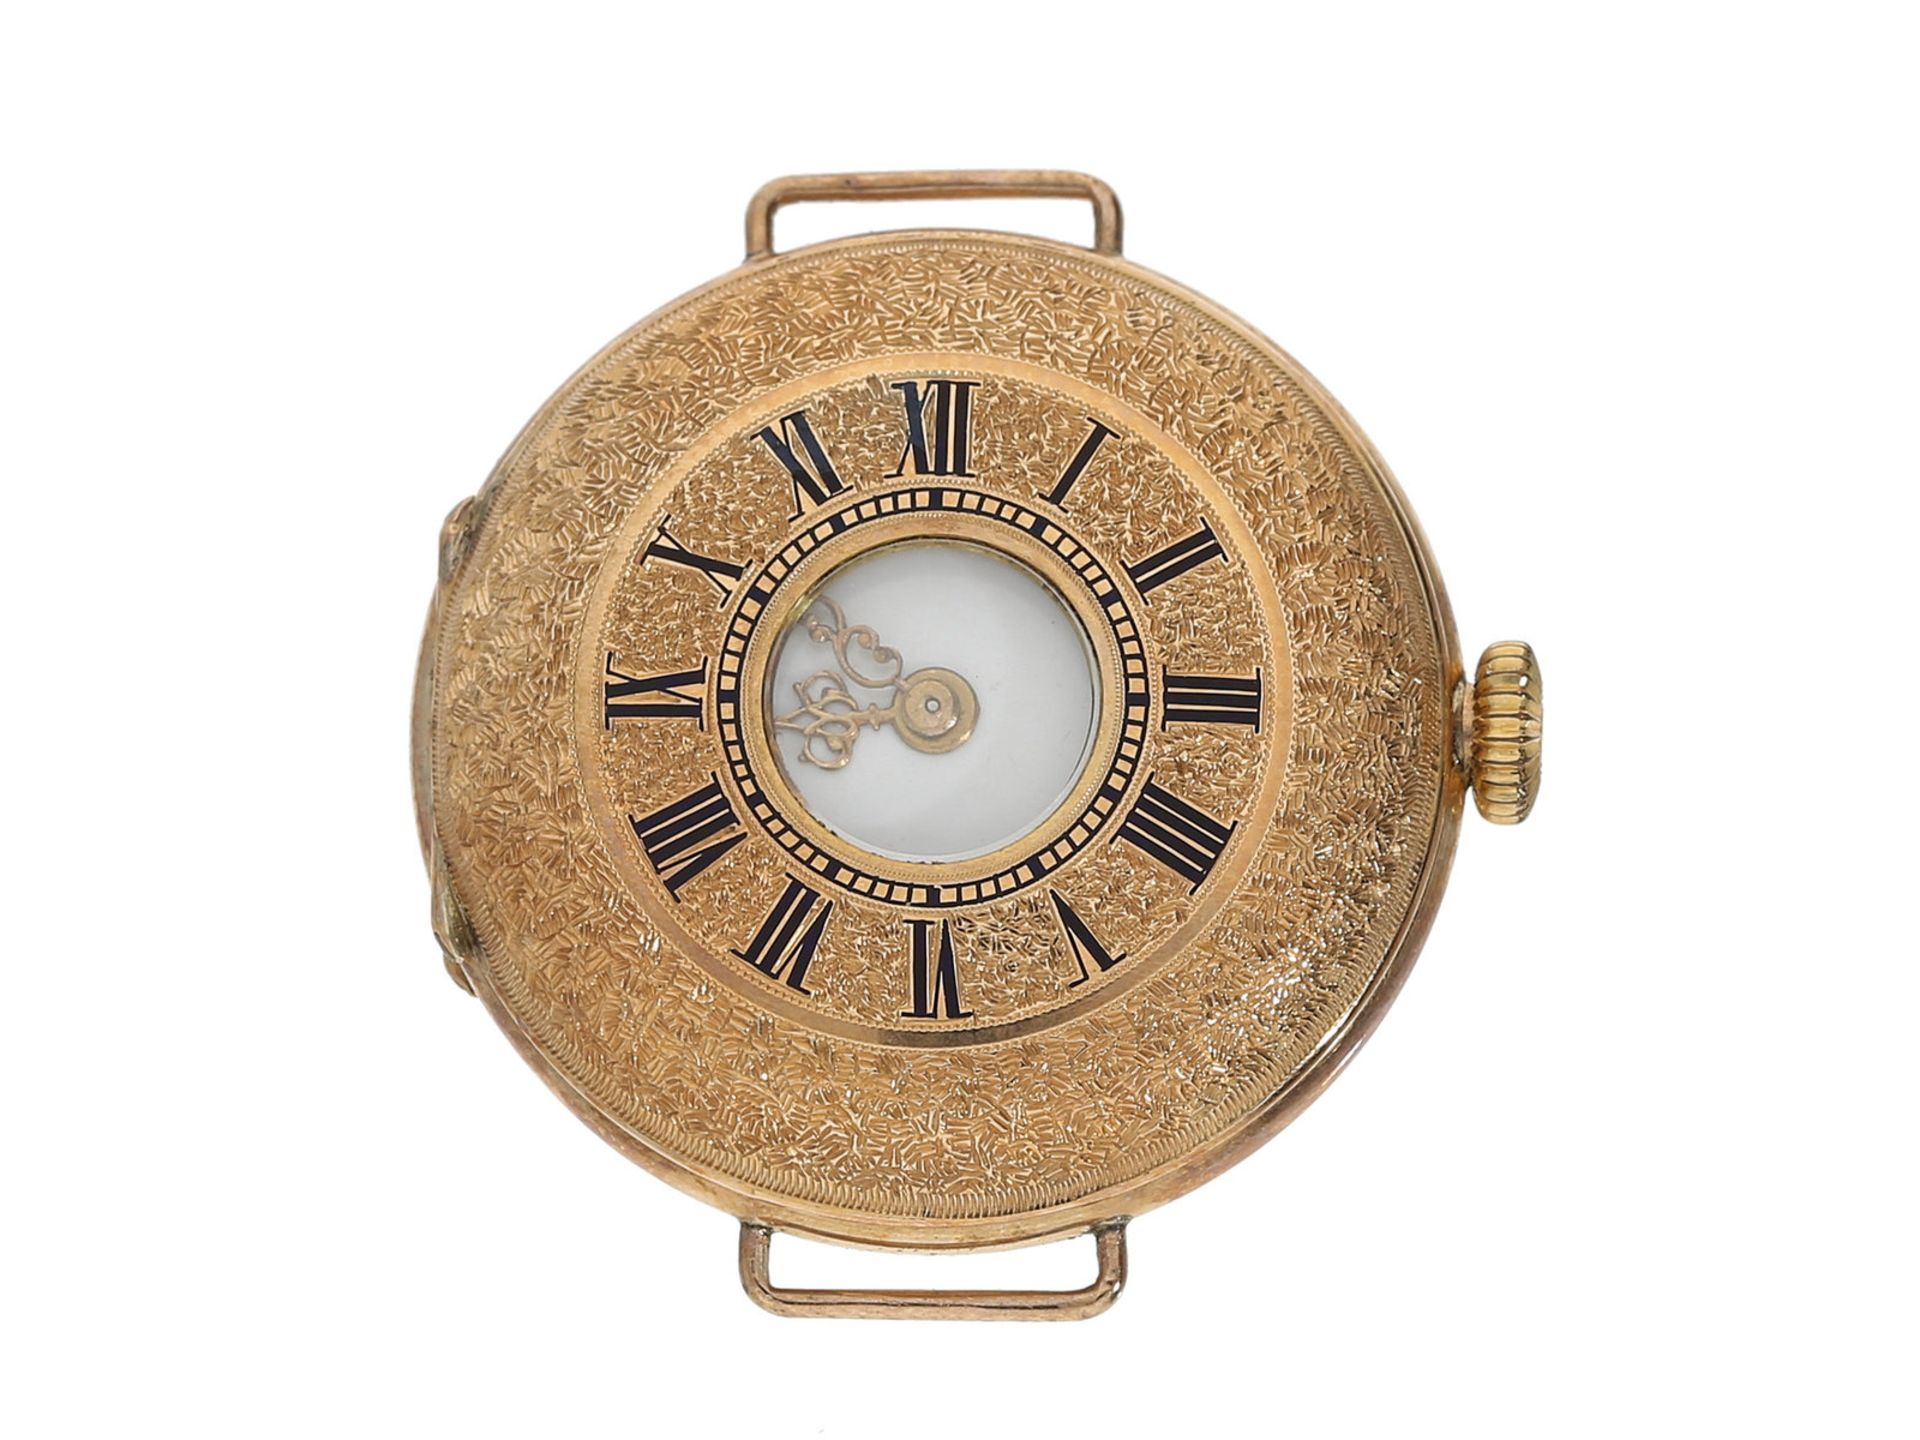 Armbanduhr: Rarität, eine der frühesten Armbanduhren mit hochwertigem Gold/Emaille-Gehäuse in der